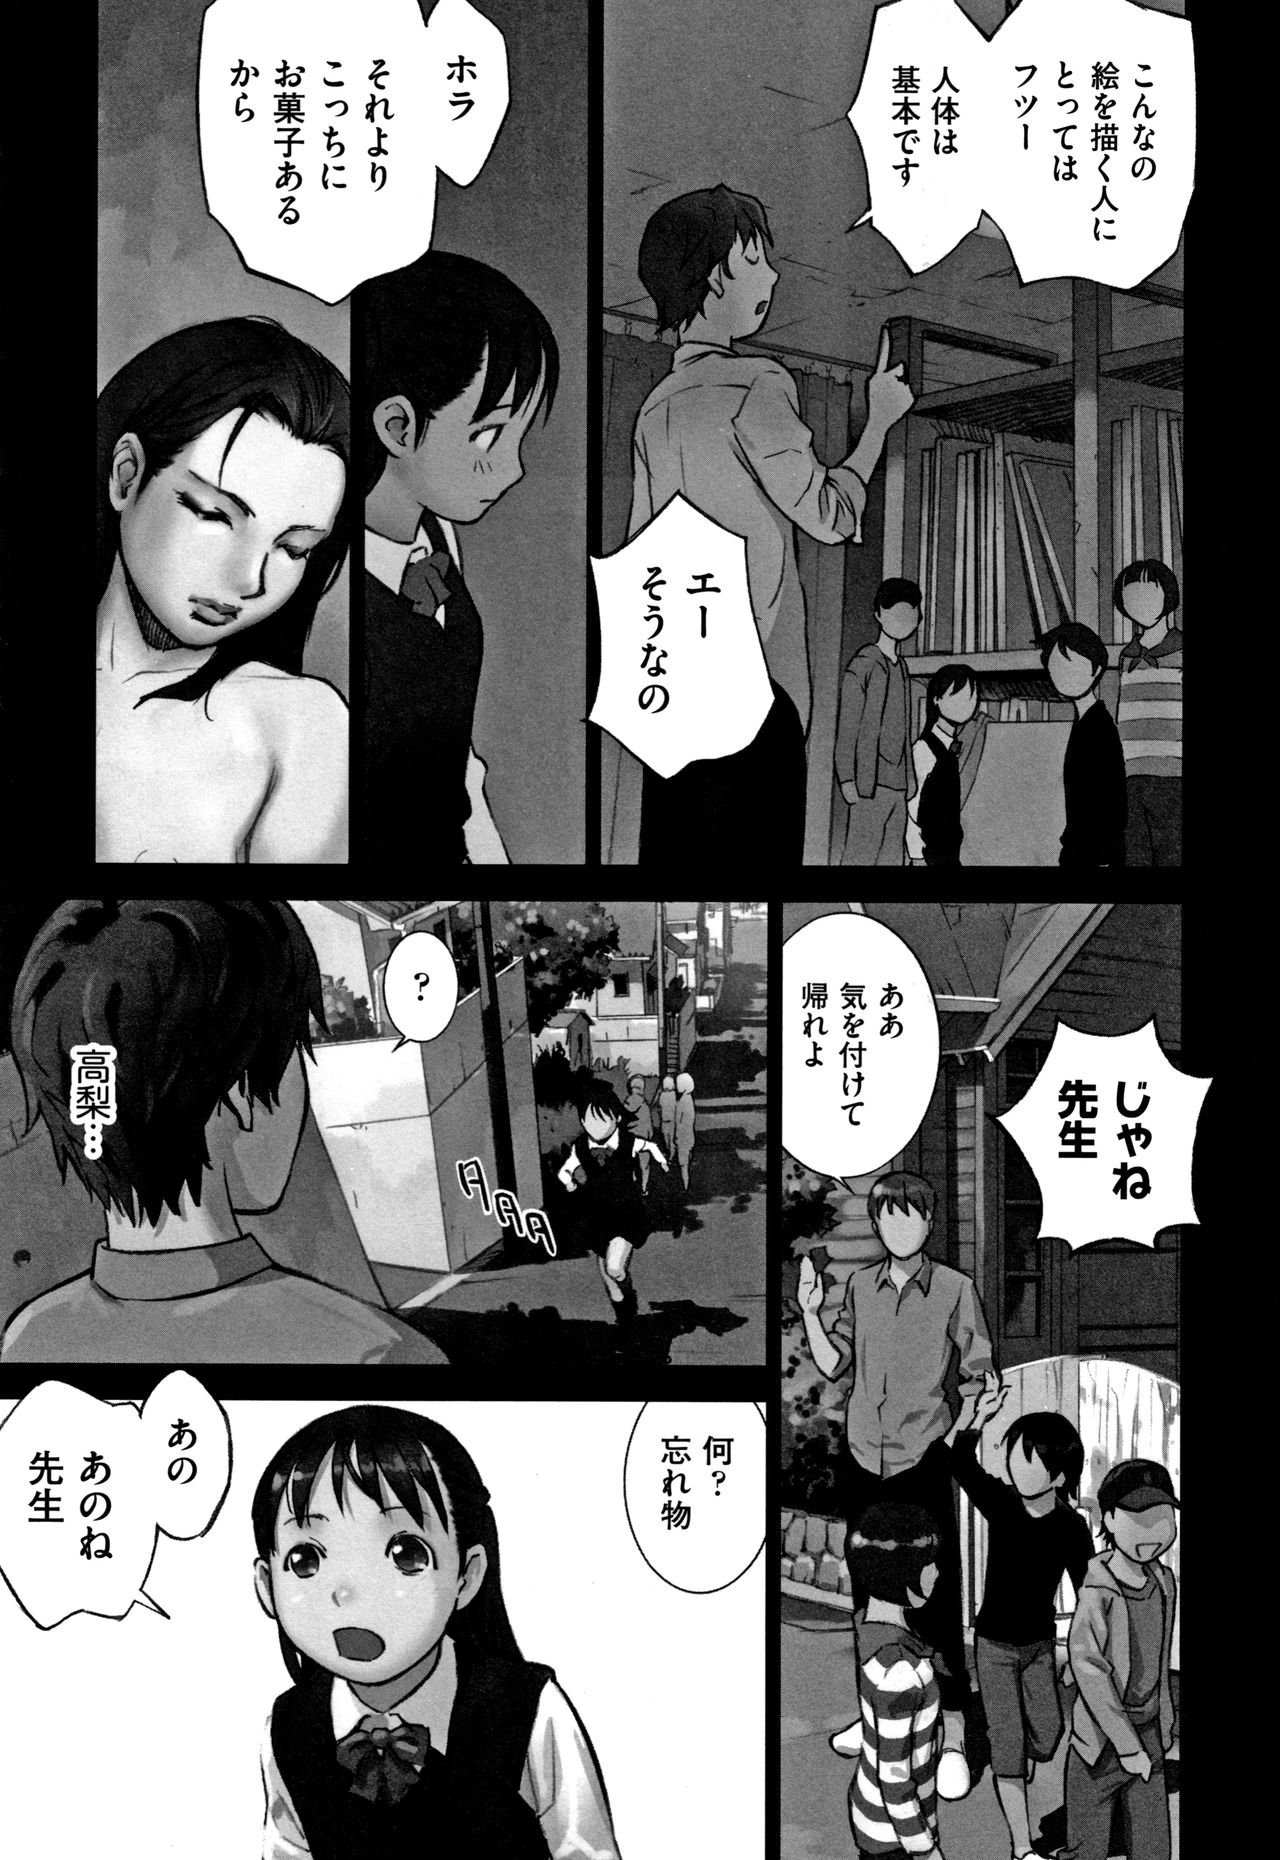 Hanainu Otokonoko wa Soko no Kouzou ga Shiritai noda page 182 full.